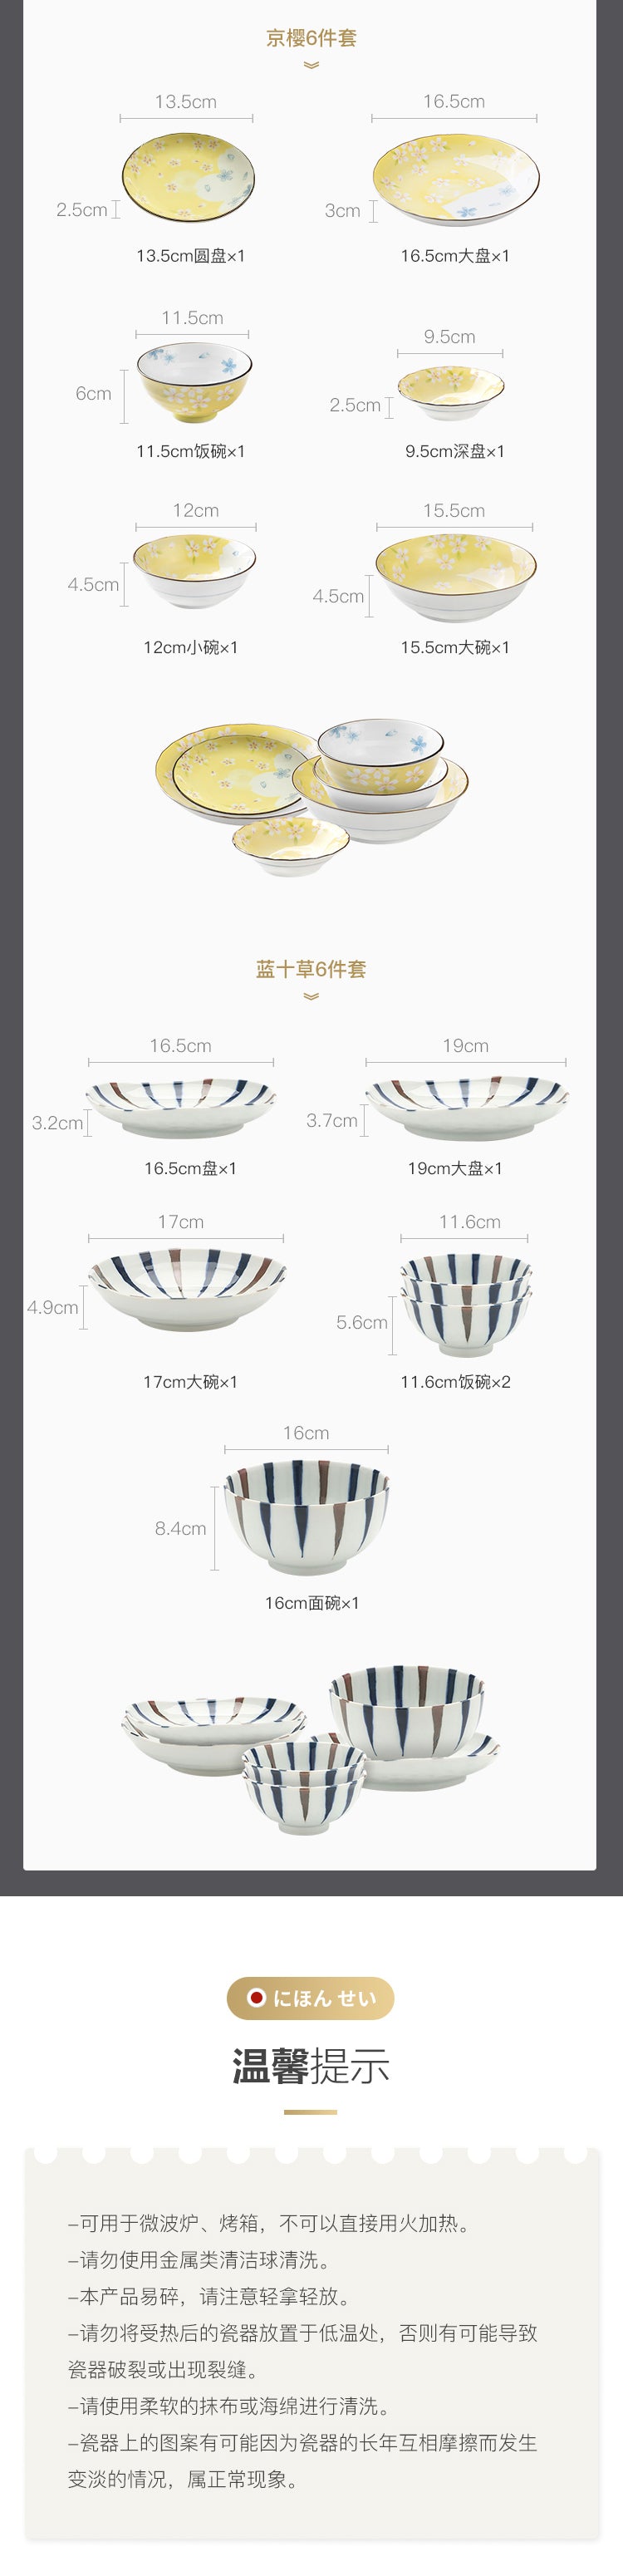 【美仓发货5-7日达】网易严选 日本制造 白雪樱餐具6件套 日式餐具 2人食